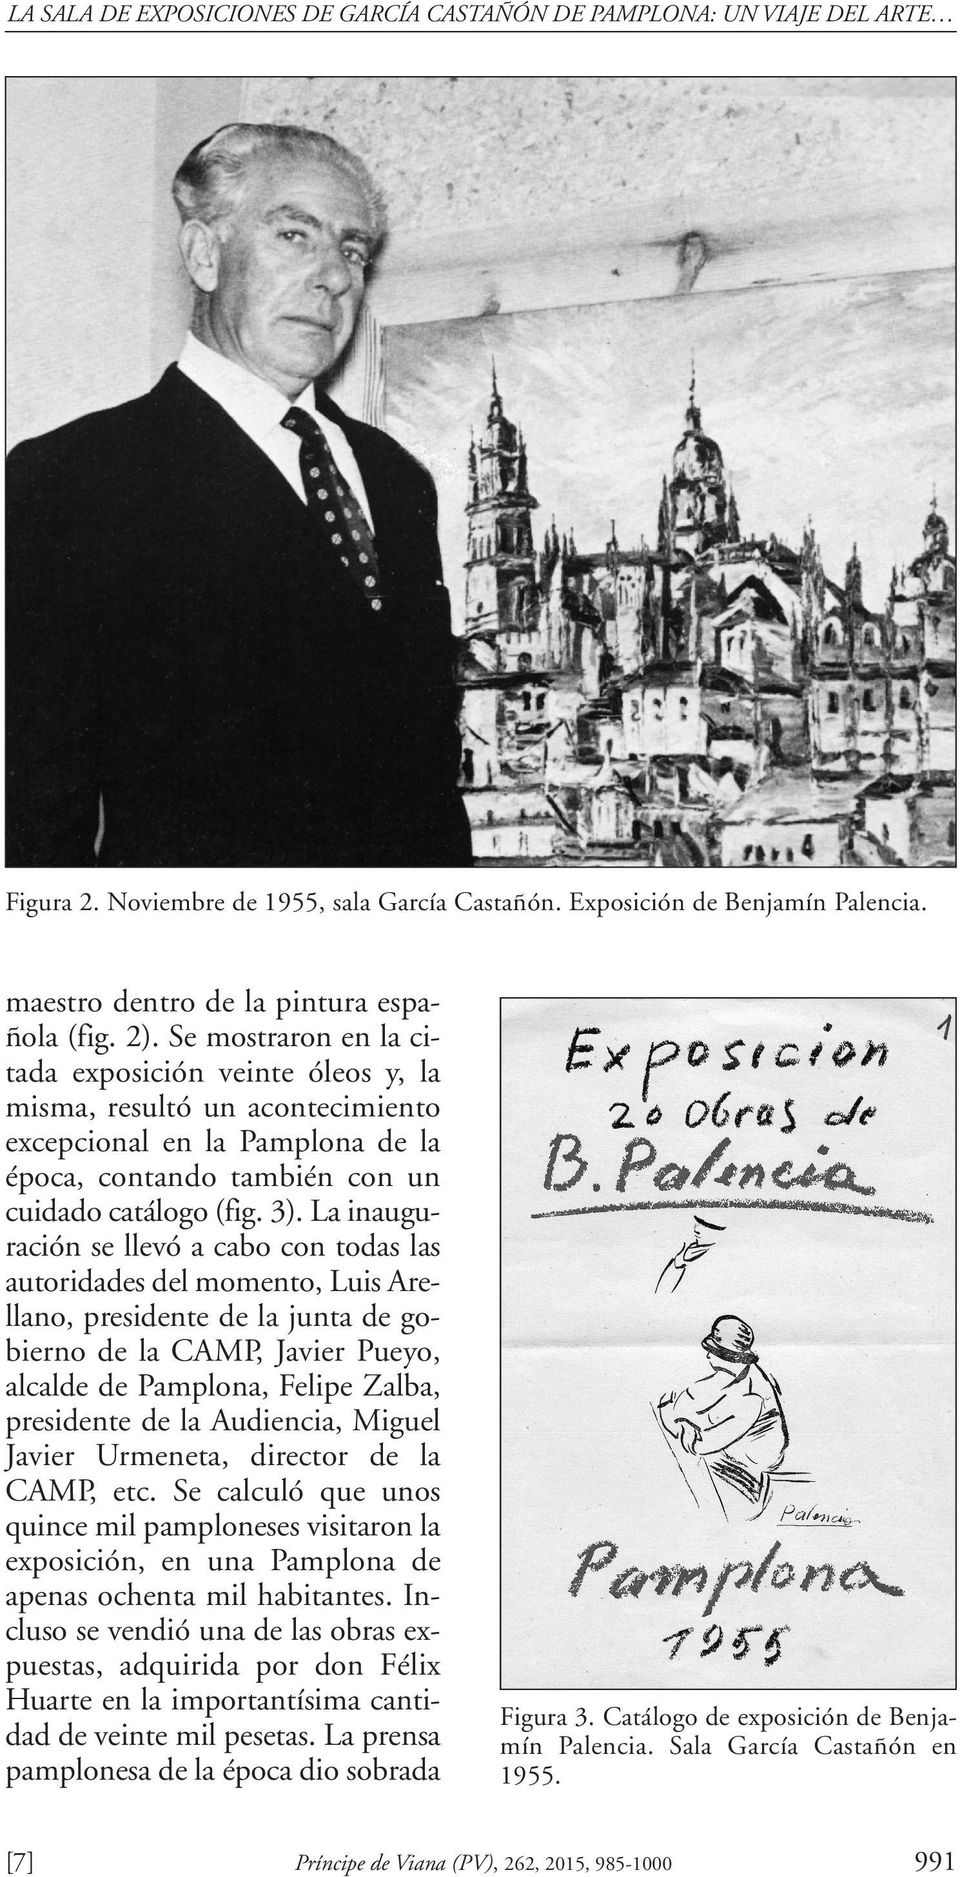 Se mostraron en la citada exposición veinte óleos y, la misma, resultó un acontecimiento excepcional en la Pamplona de la época, contando también con un cuidado catálogo (fig. 3).